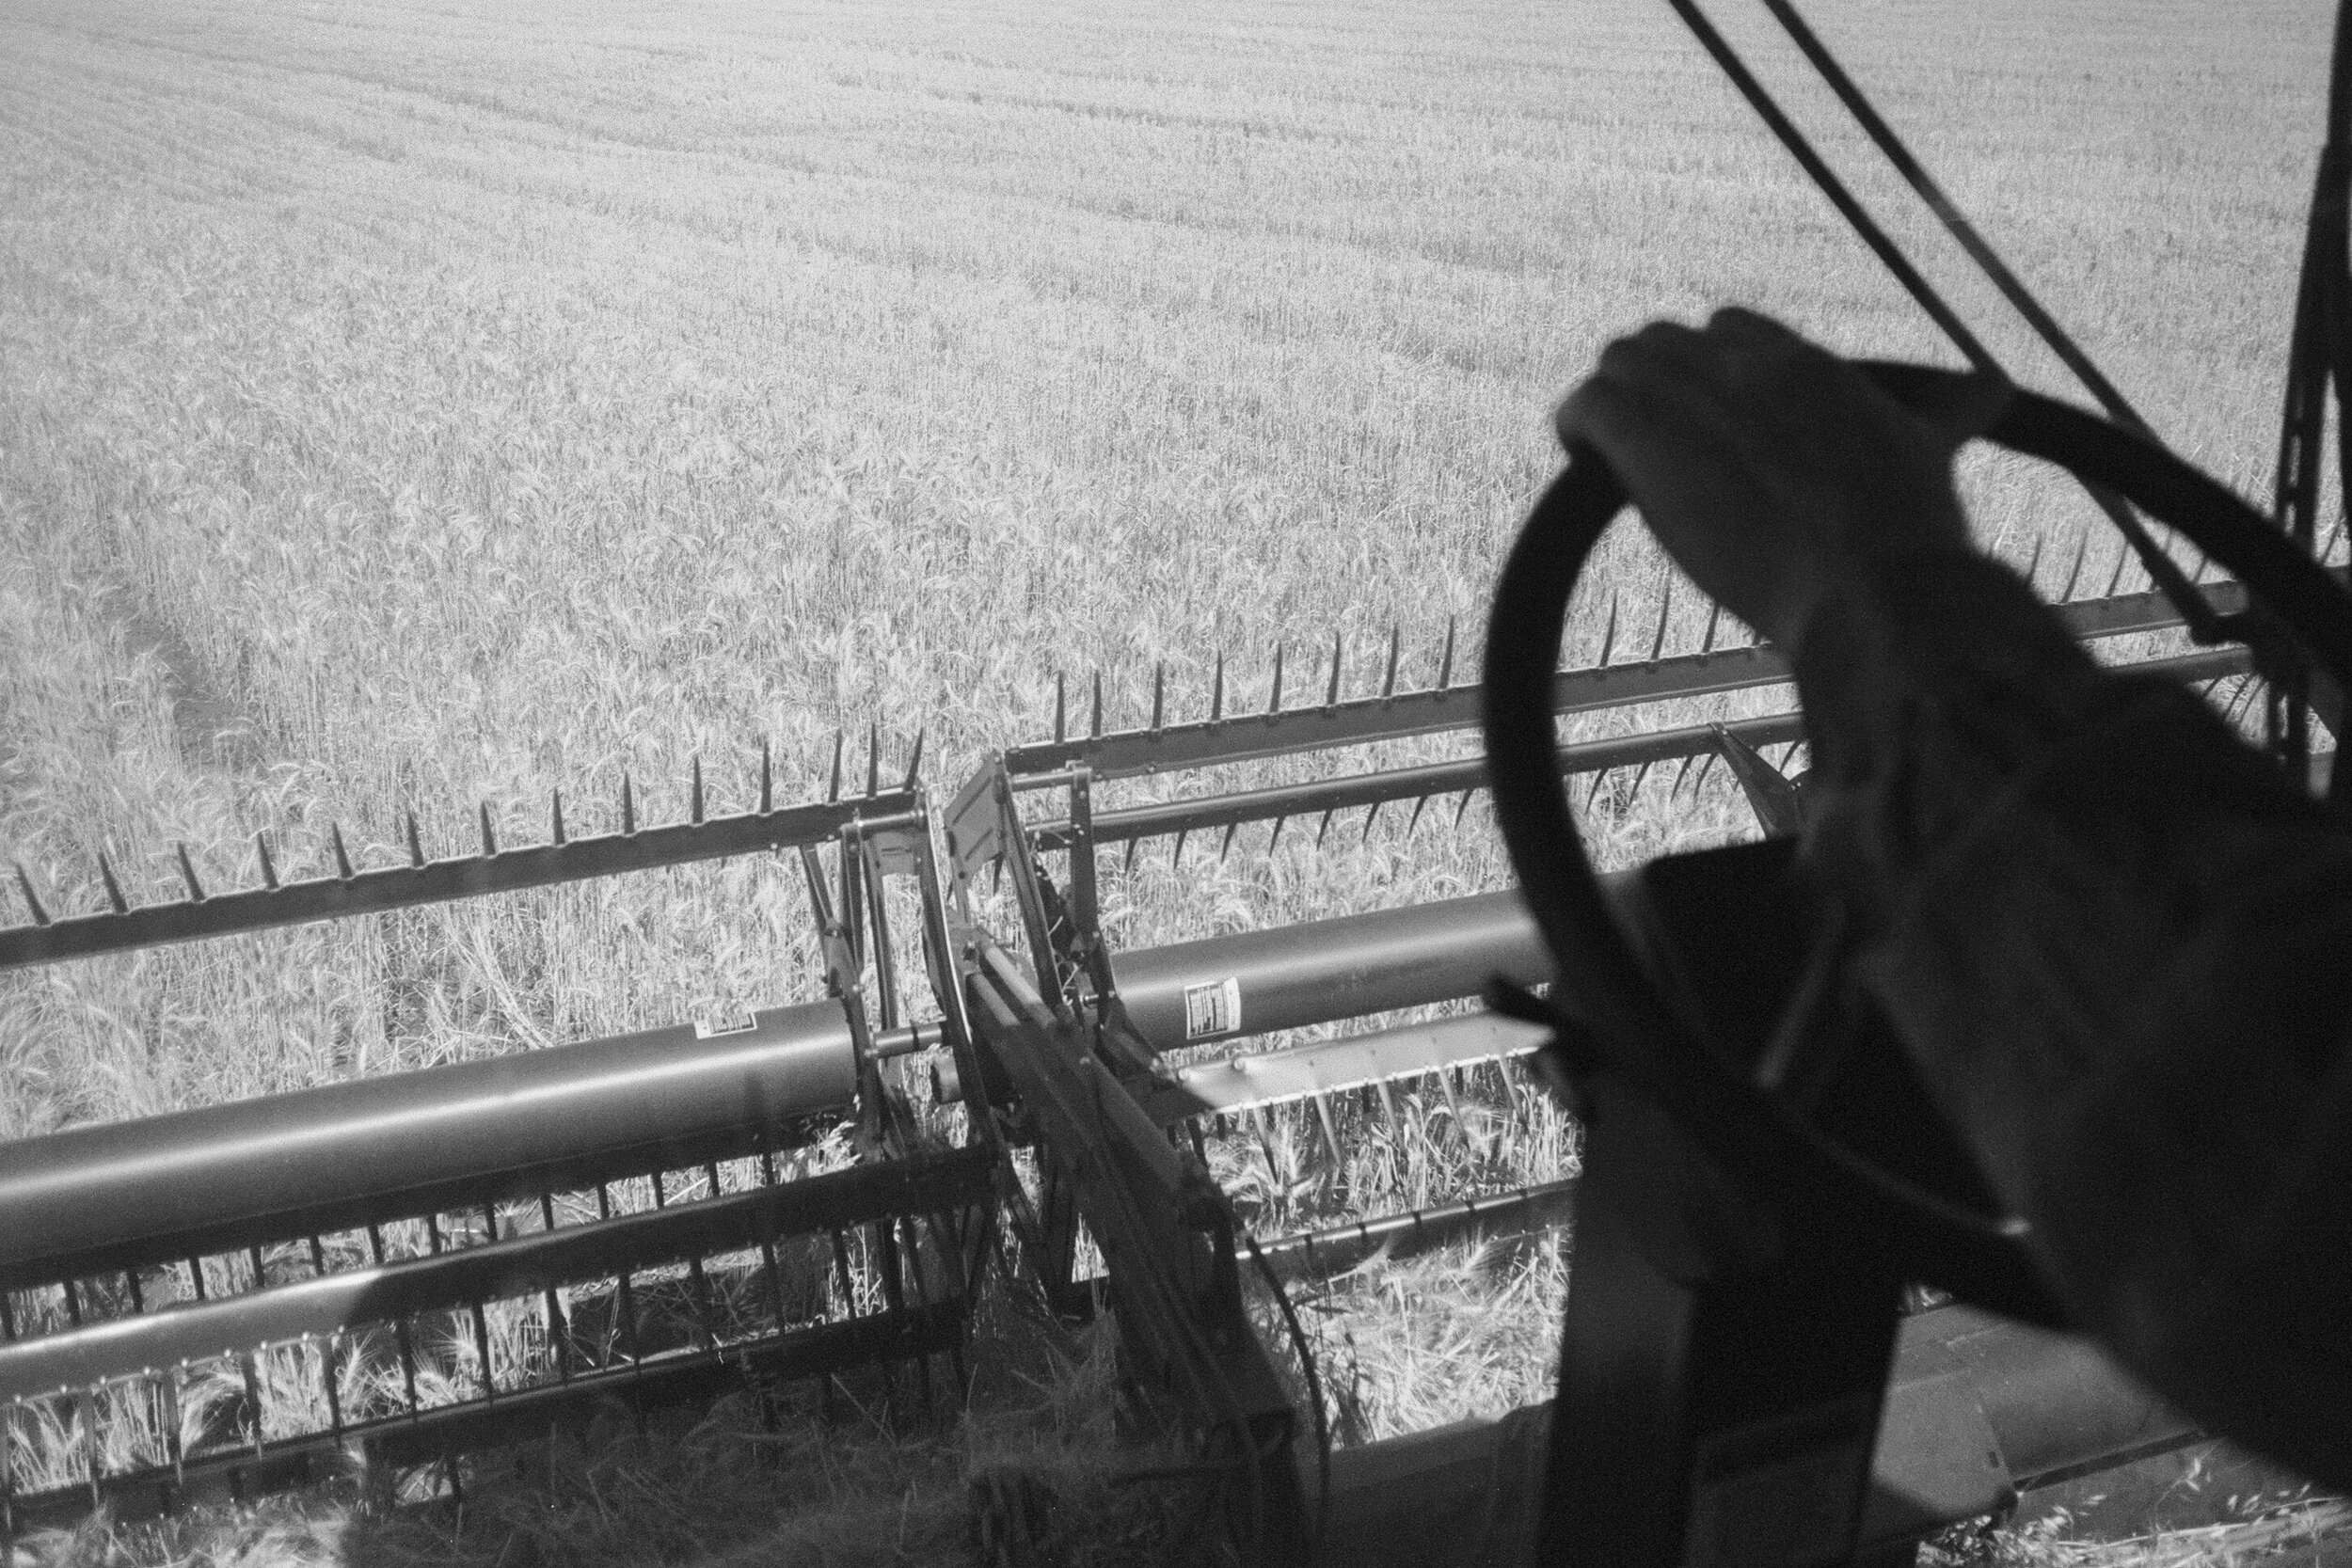 Angie-Roe-Photography-Harvest-Rural-Wheatbelt-Farm-Documentary (3).jpg